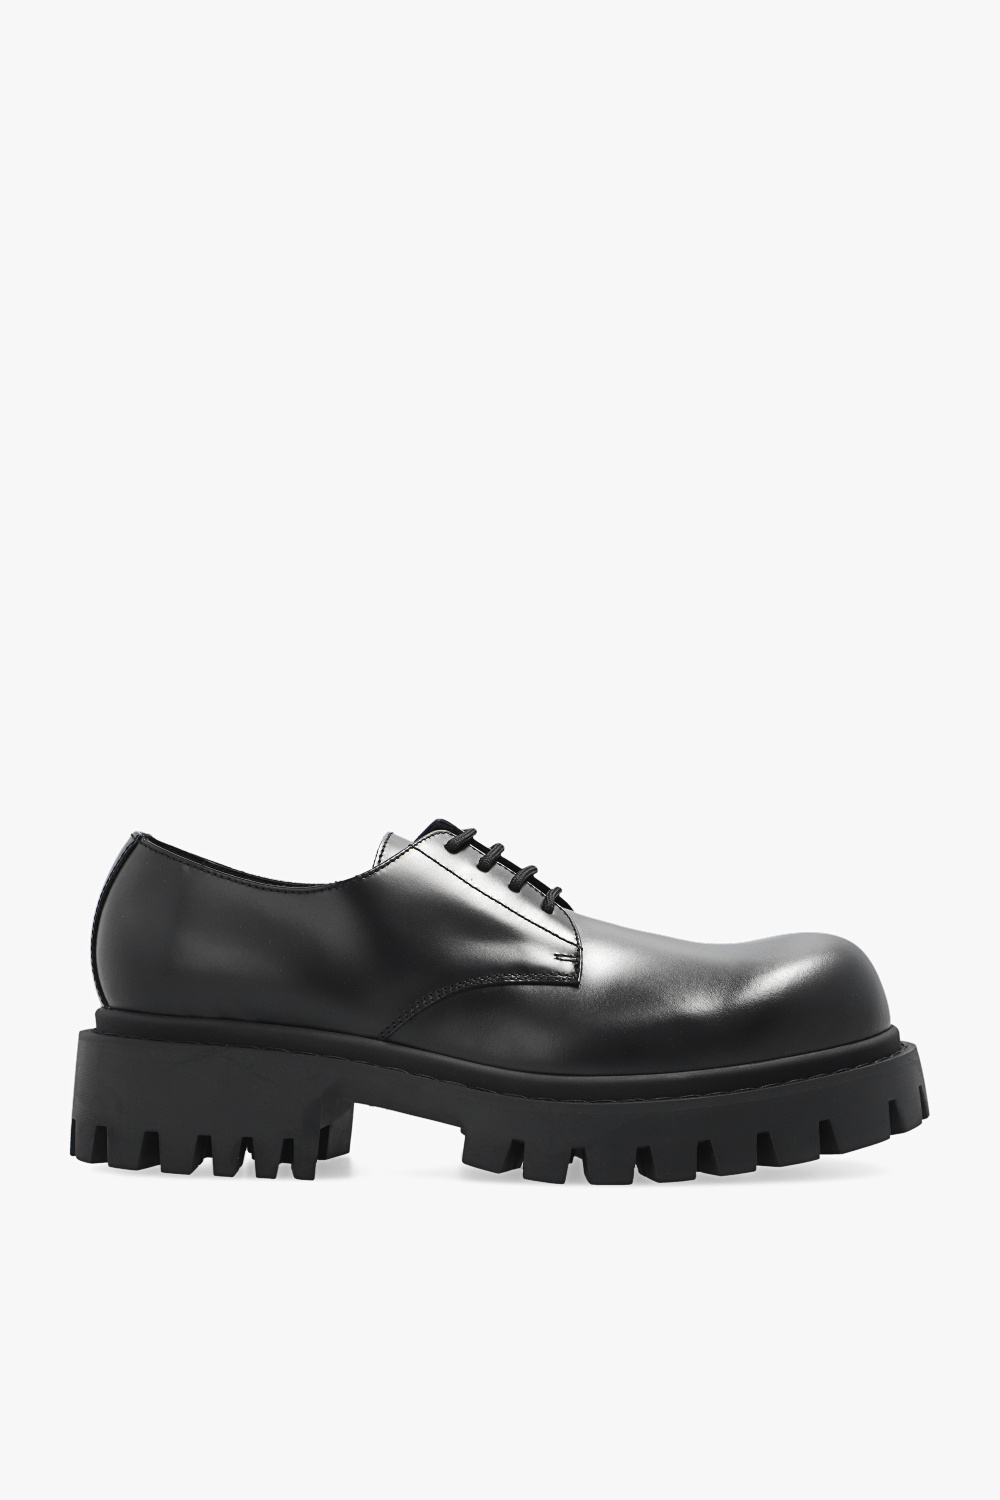 Louis Vuitton Men's Navy Leather Voltaire Derby Shoes size 8